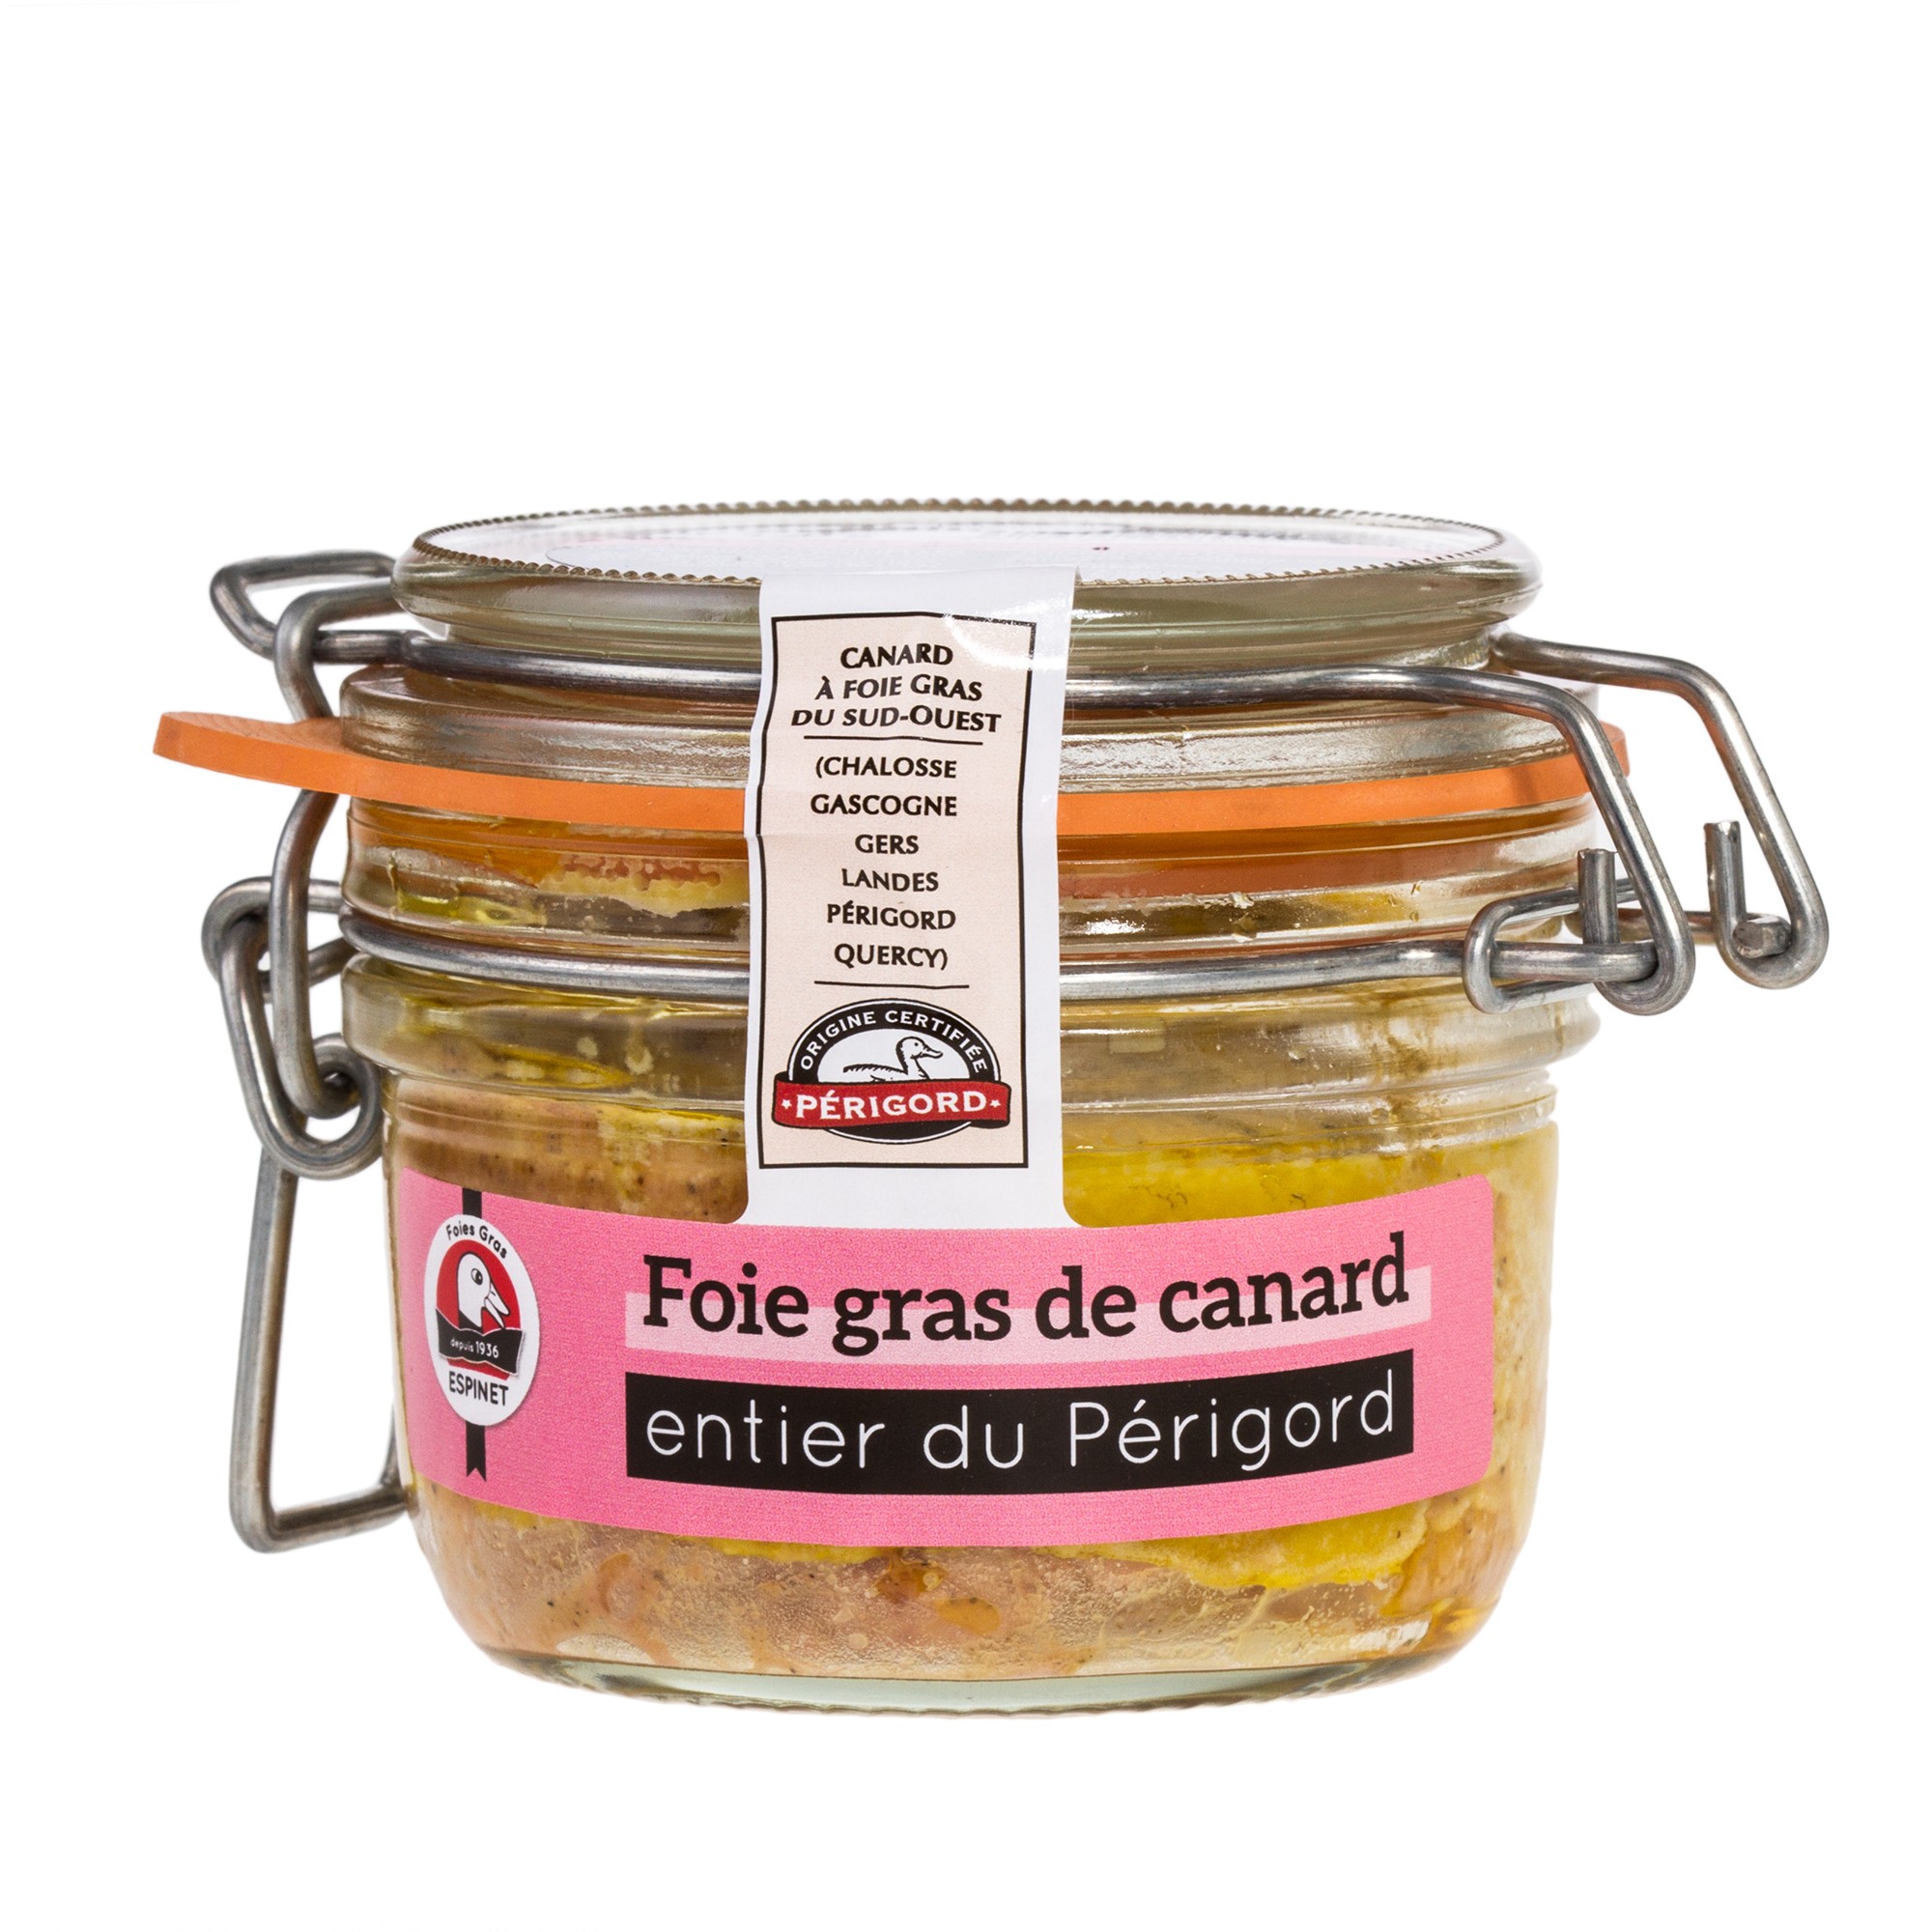 Foie gras de canard entier 350g, Producteur foie gras de canard Gers